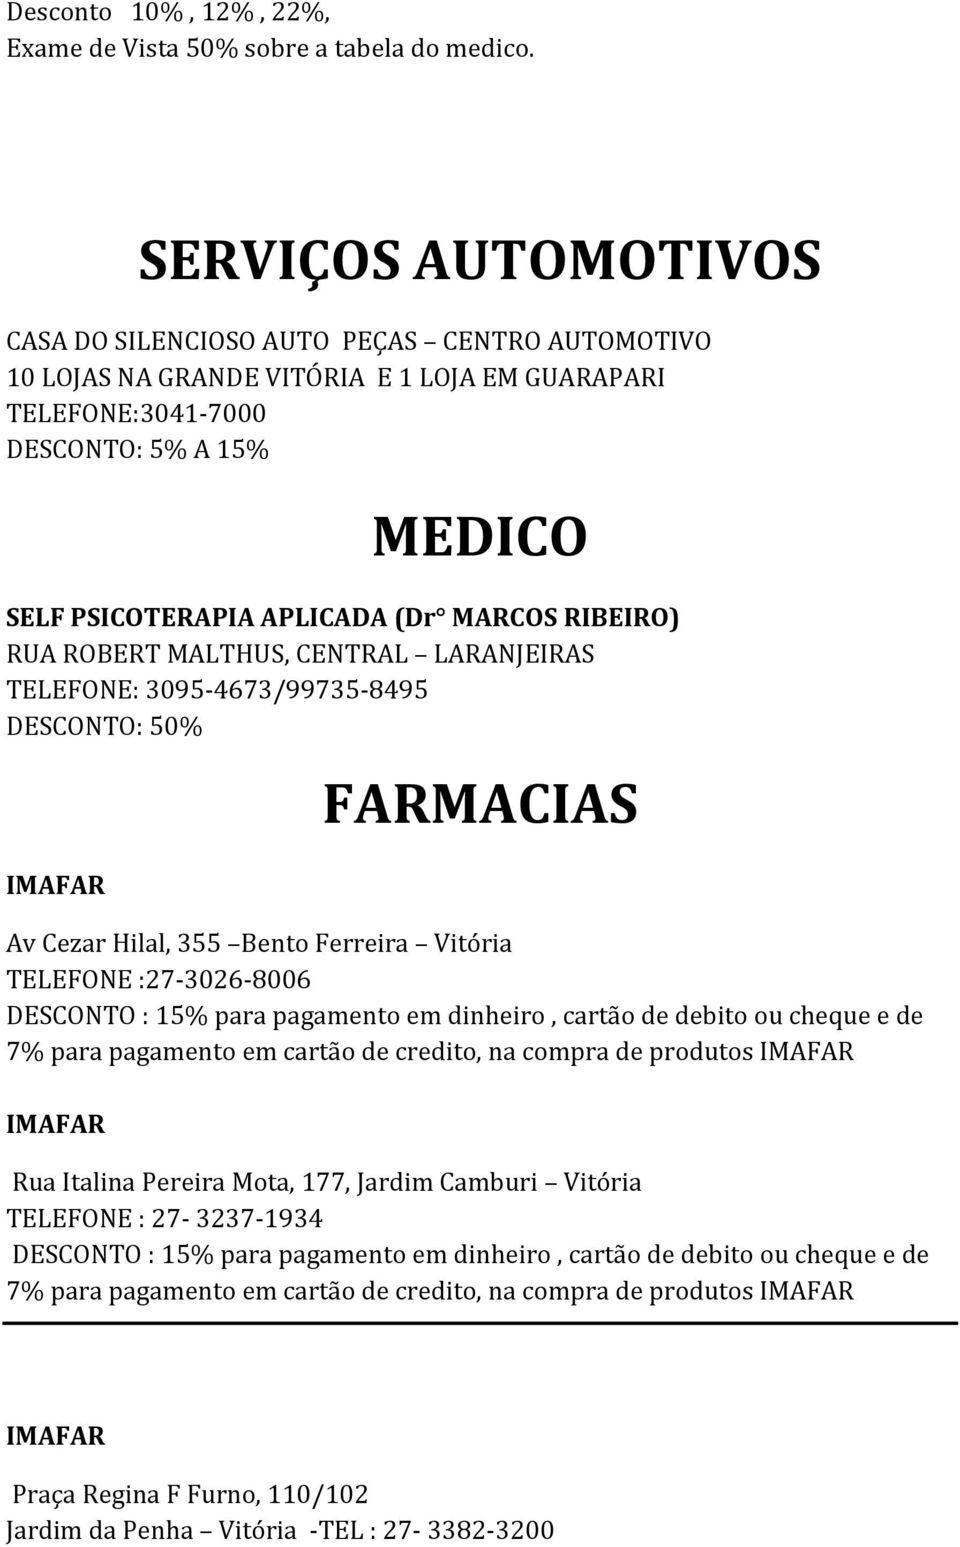 PSICOTERAPIA APLICADA (Dr MARCOS RIBEIRO) RUA ROBERT MALTHUS, CENTRAL LARANJEIRAS TELEFONE: 3095-4673/99735-8495 DESCONTO: 50% FARMACIAS Av Cezar Hilal, 355 Bento Ferreira